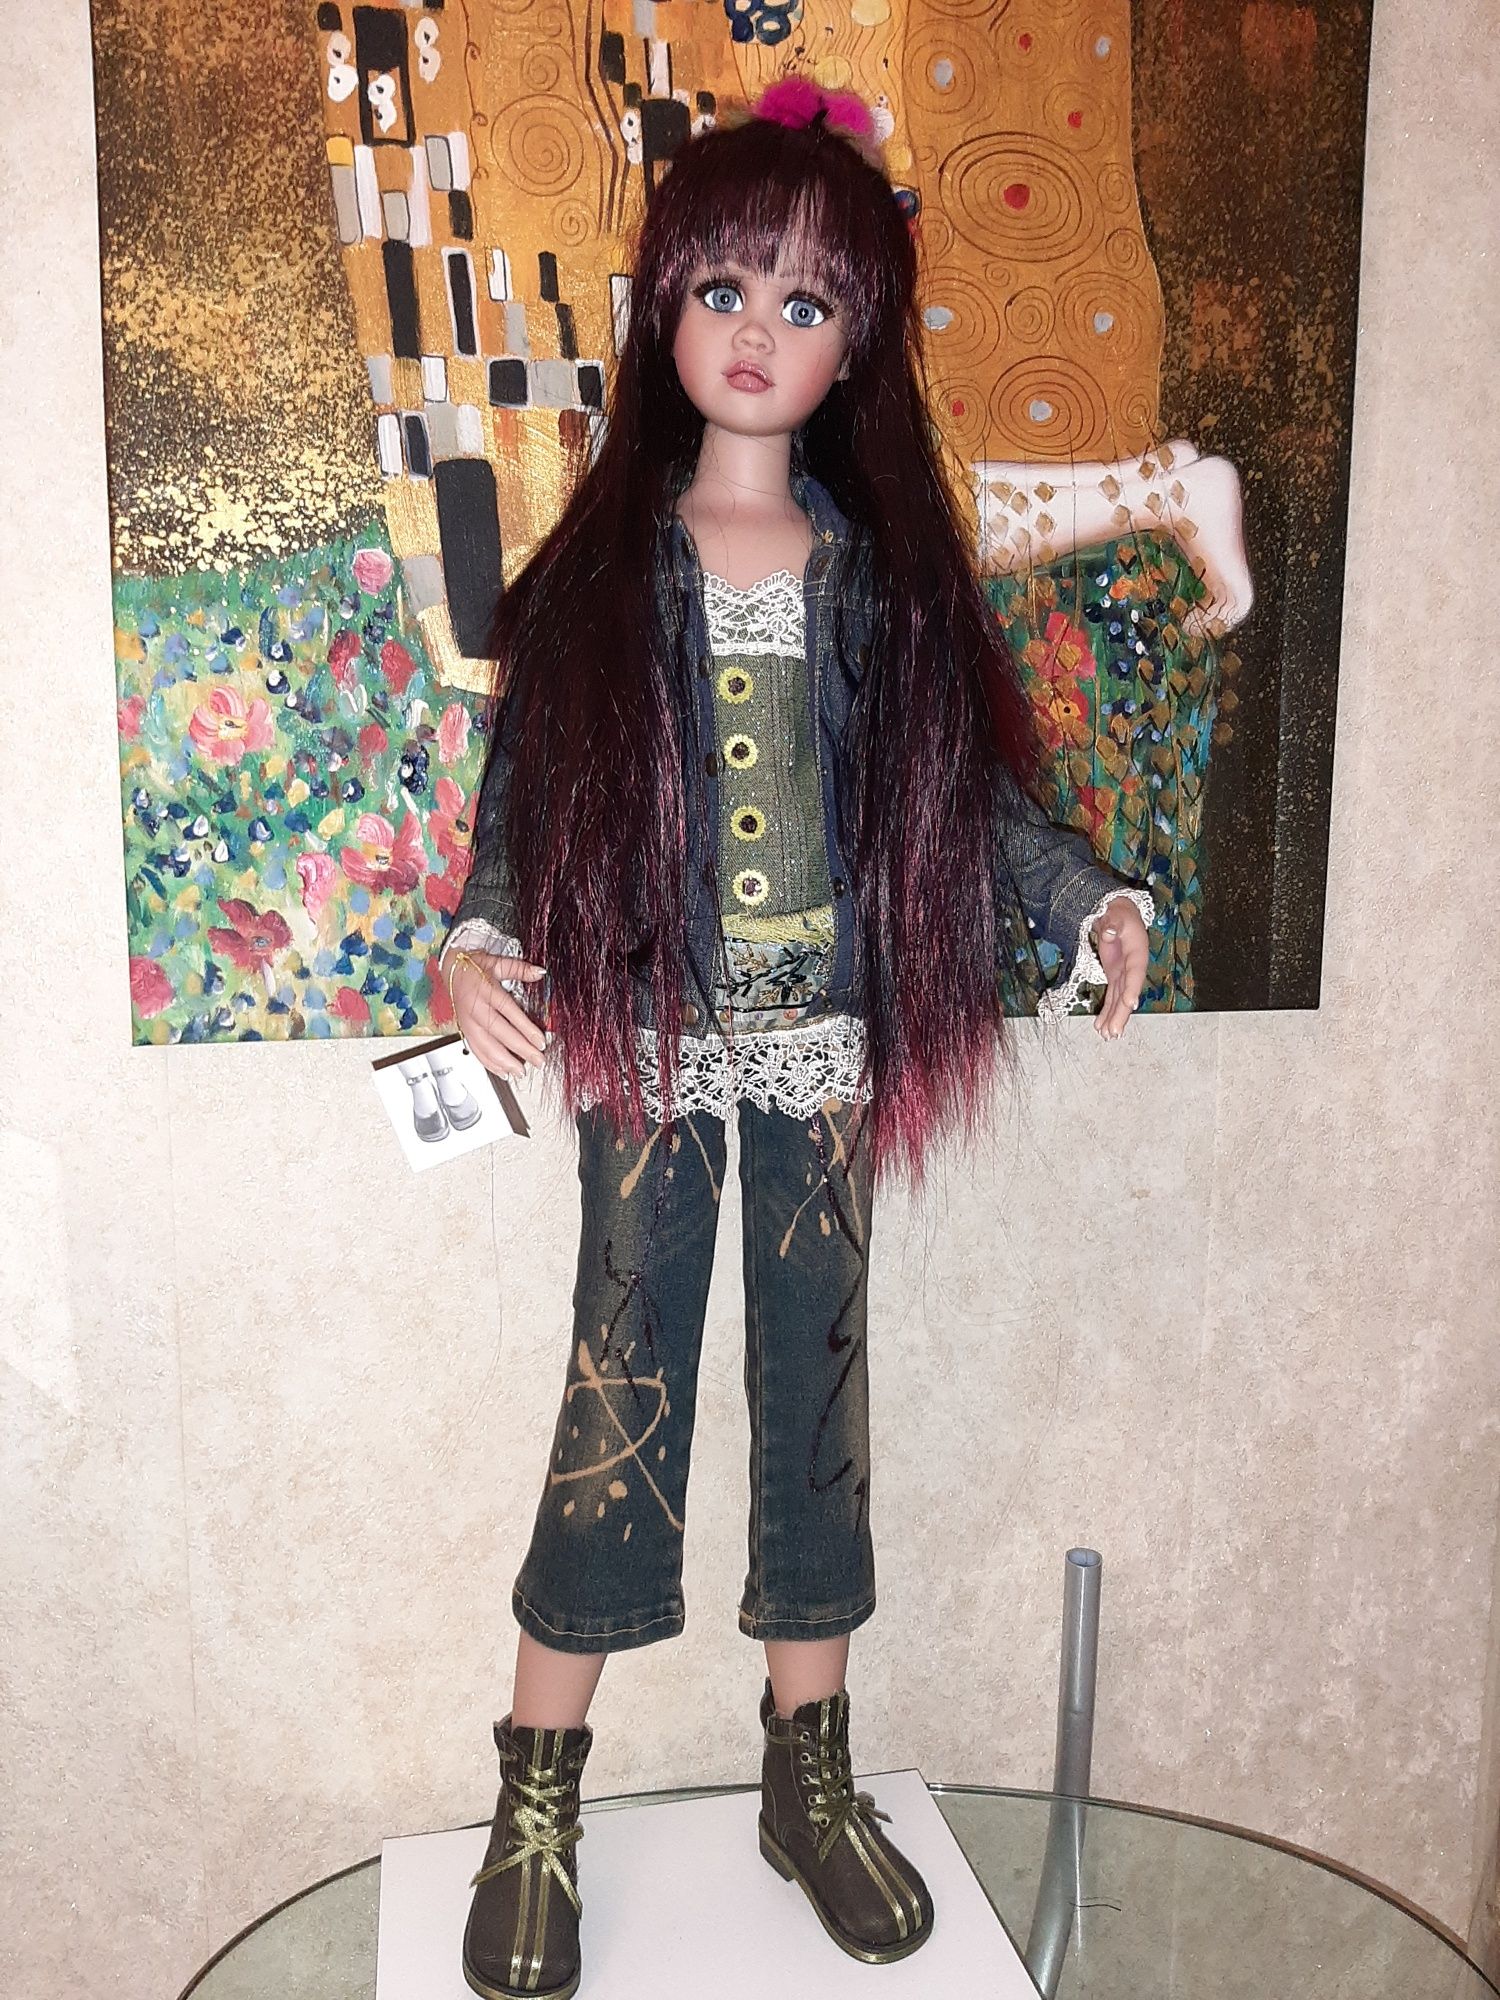 Редкая коллекционная кукла Jan Mclean по имени Maggie